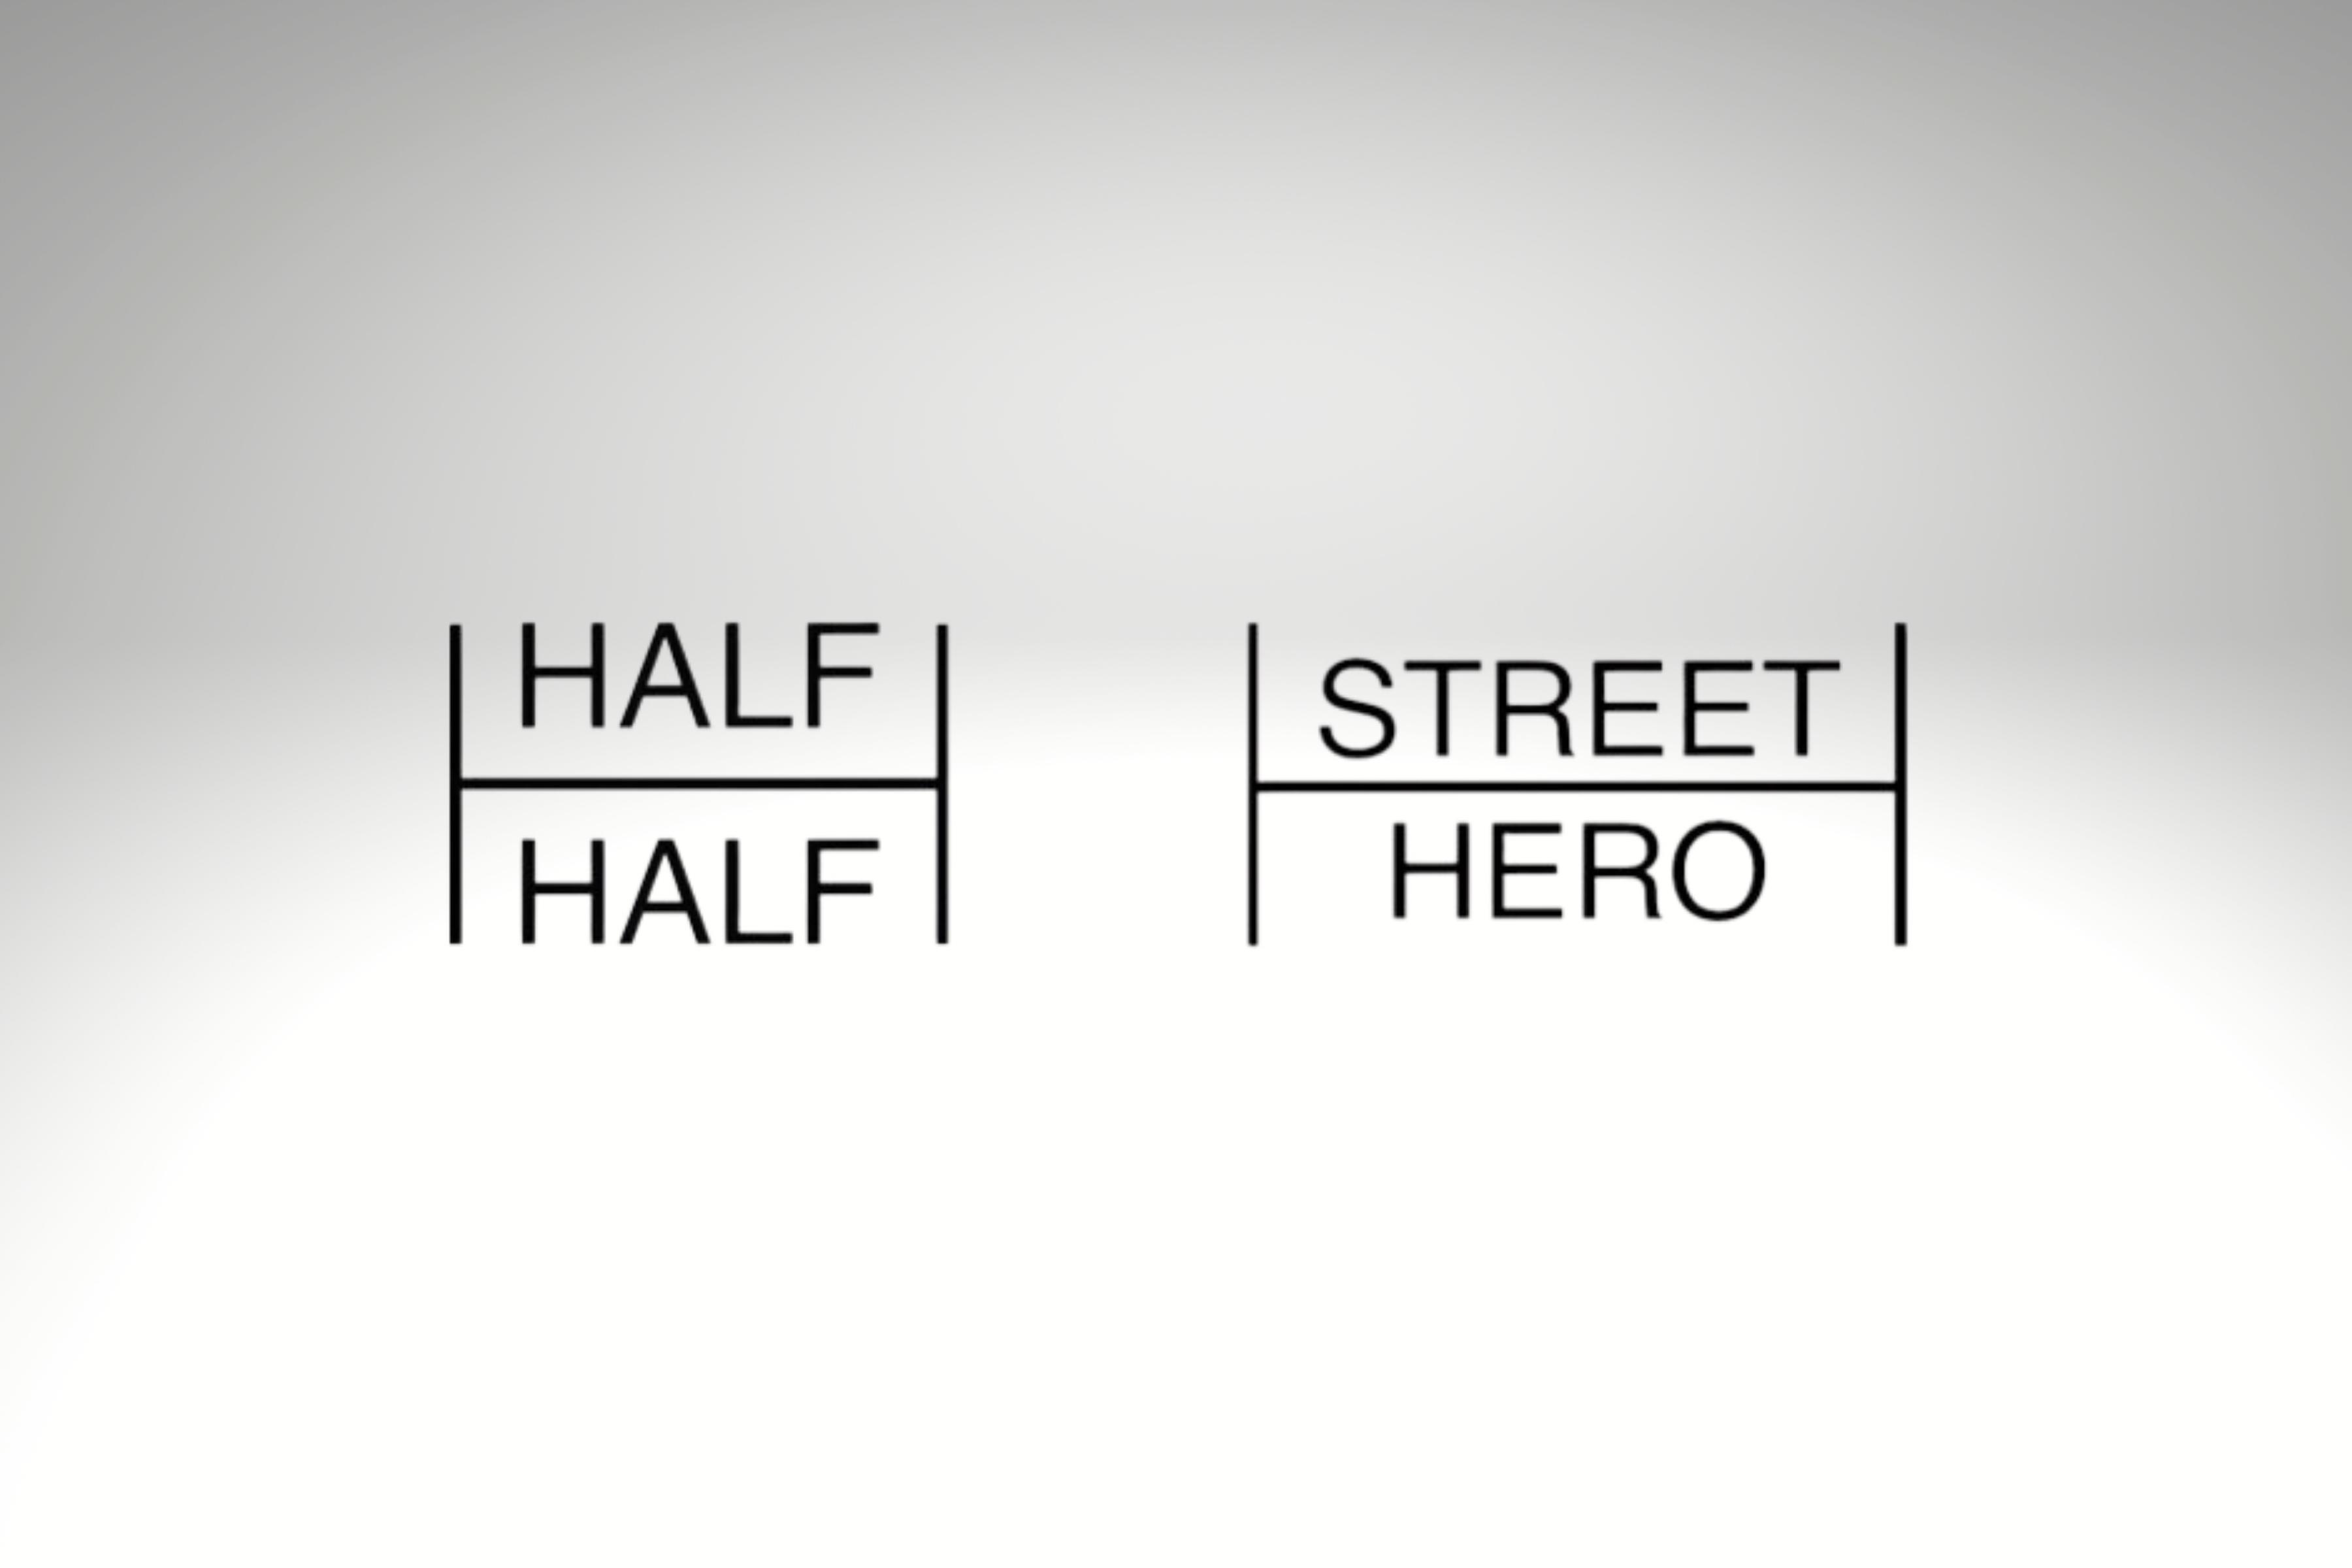 Логотипы Half-Half и Street hero